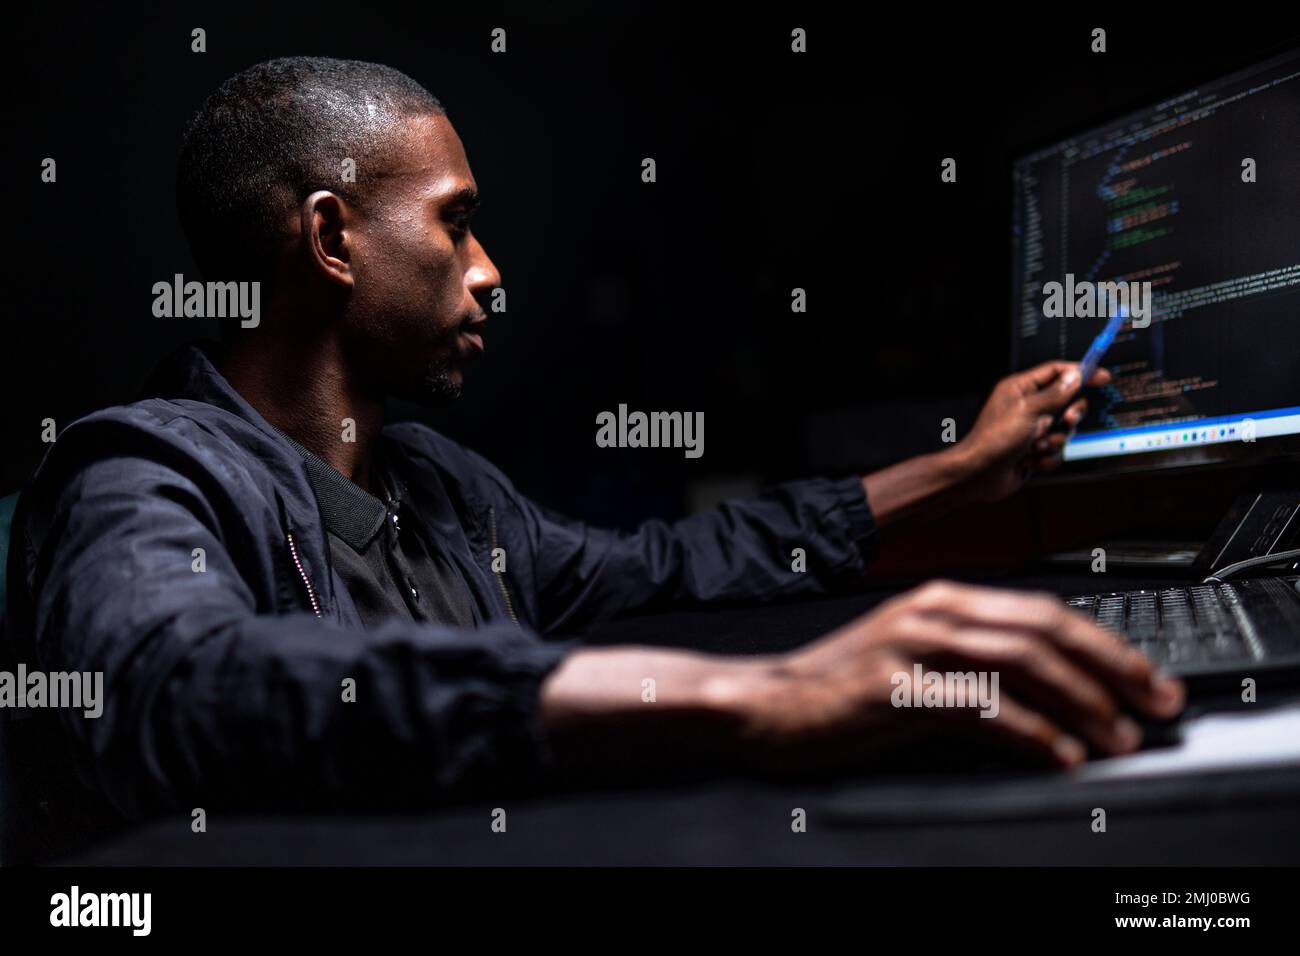 Maschio nero che legge il codice scritto sul monitor nella stanza buia Foto Stock